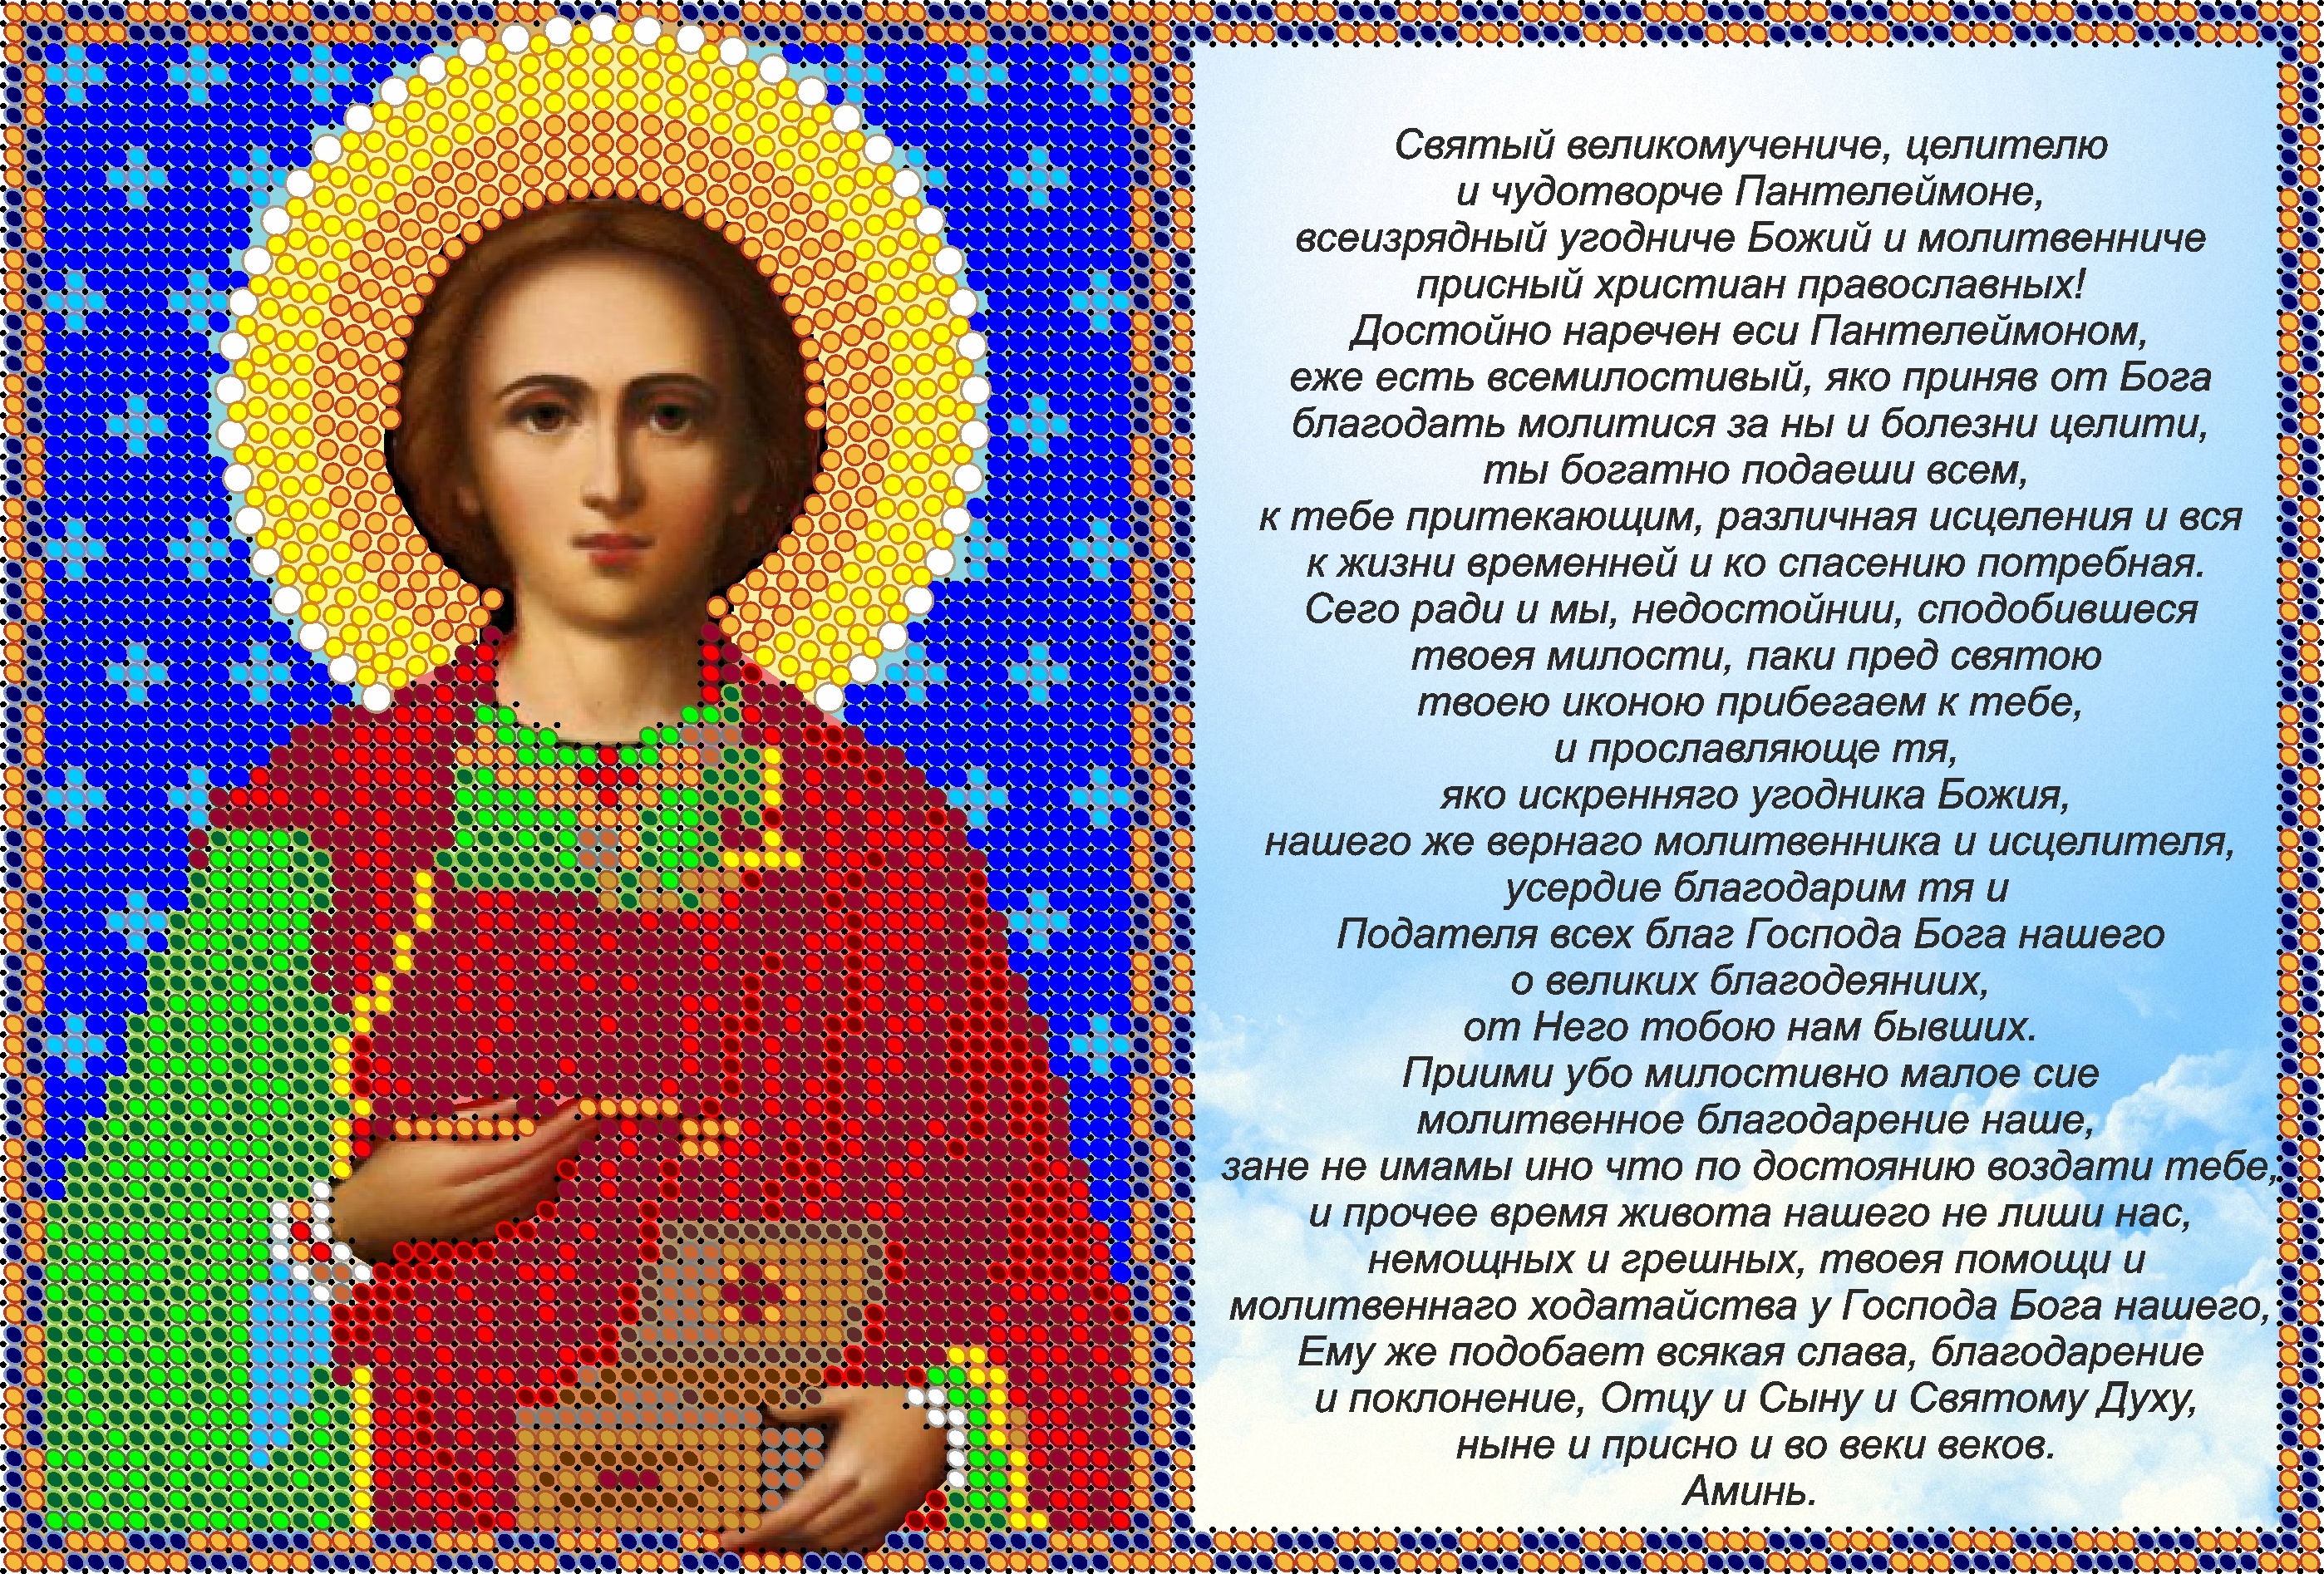 Молитва святого пантелеймона на русском языке. Икона Святого Пантелеймона целителя с молитвой. 9 Августа день Пантелеймона целителя.